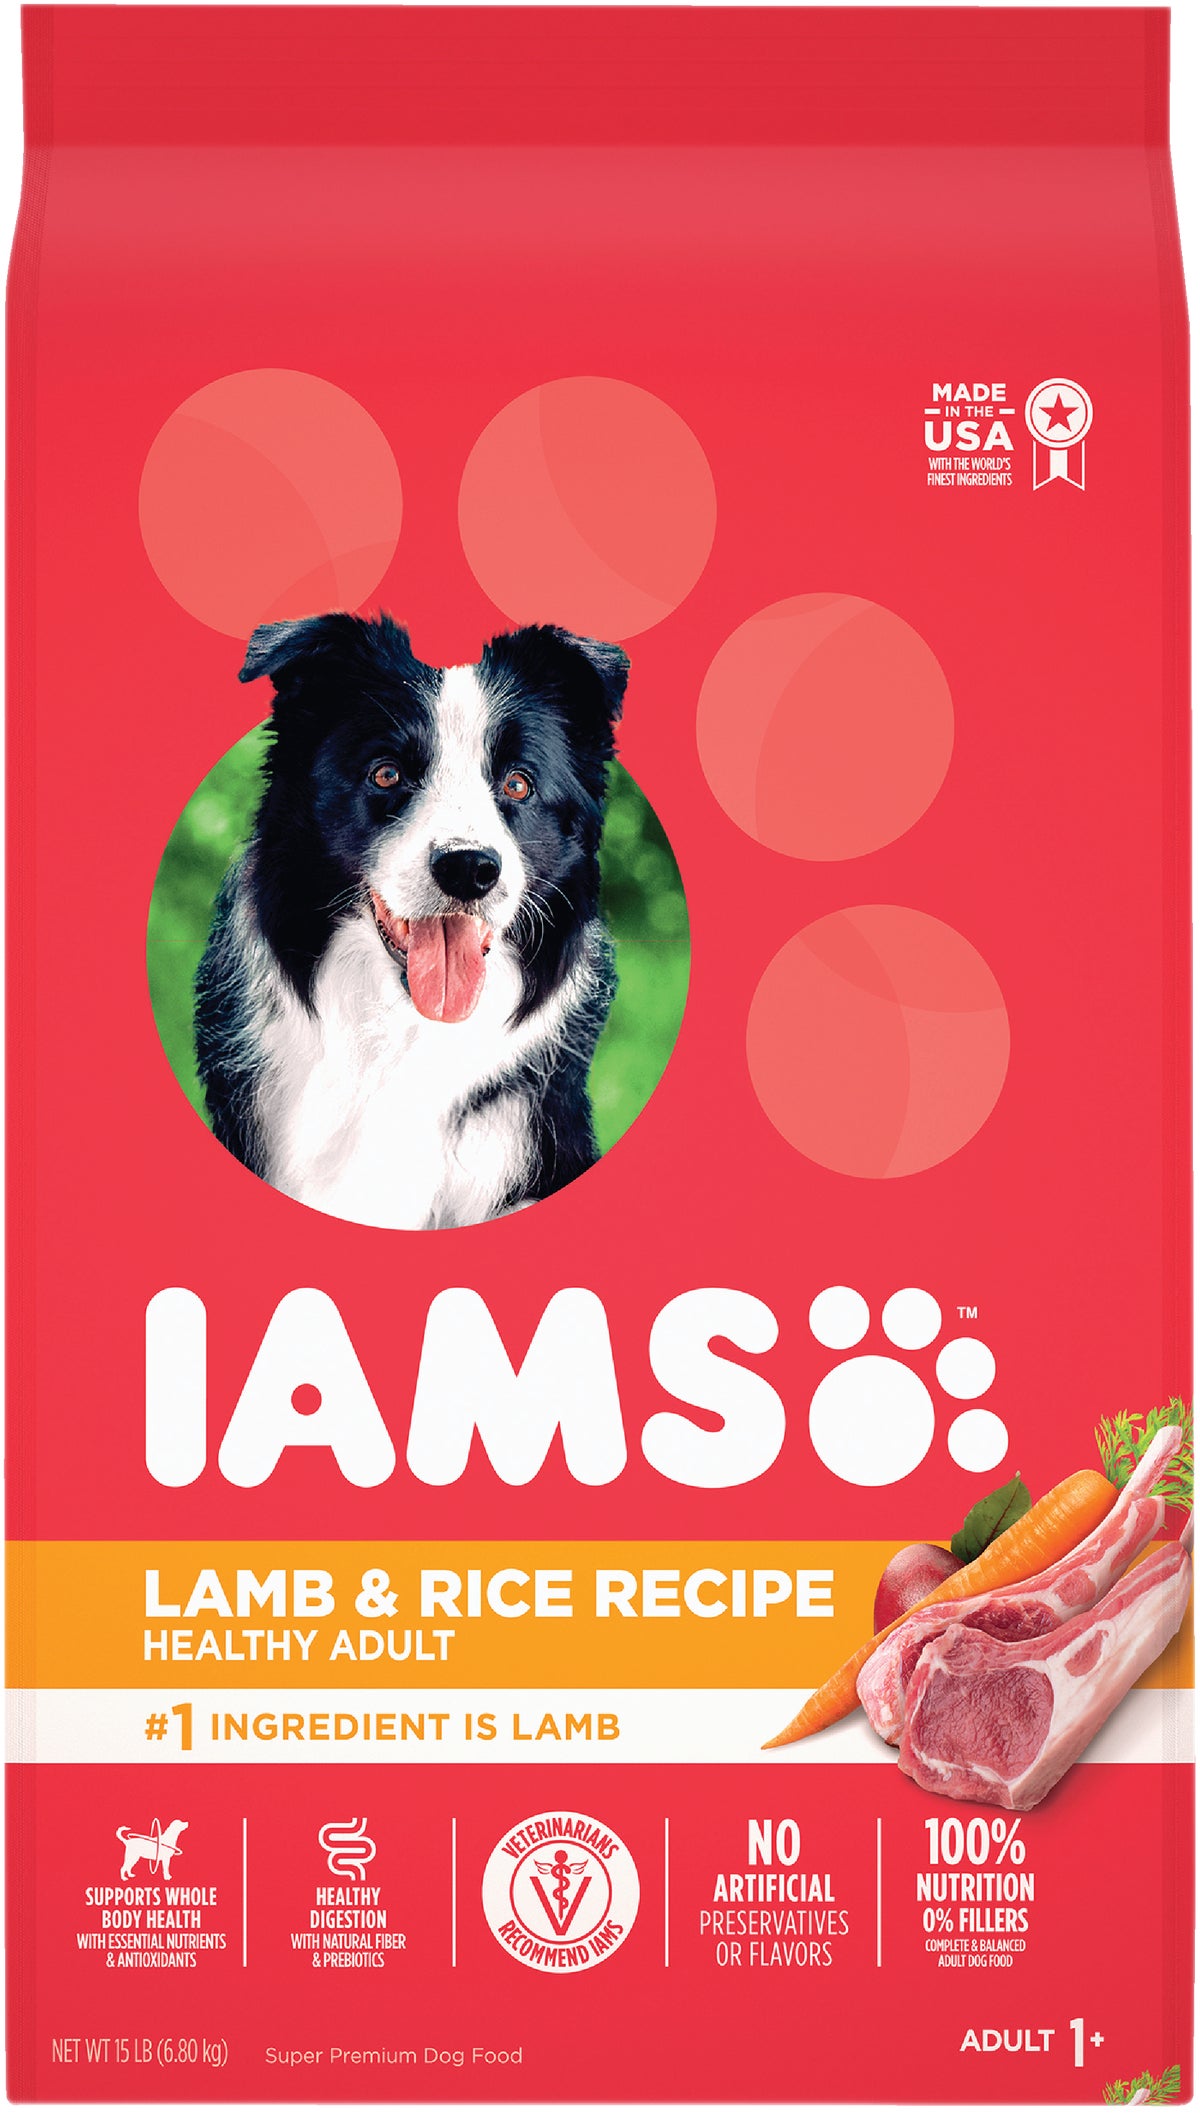 is iams bad dog food